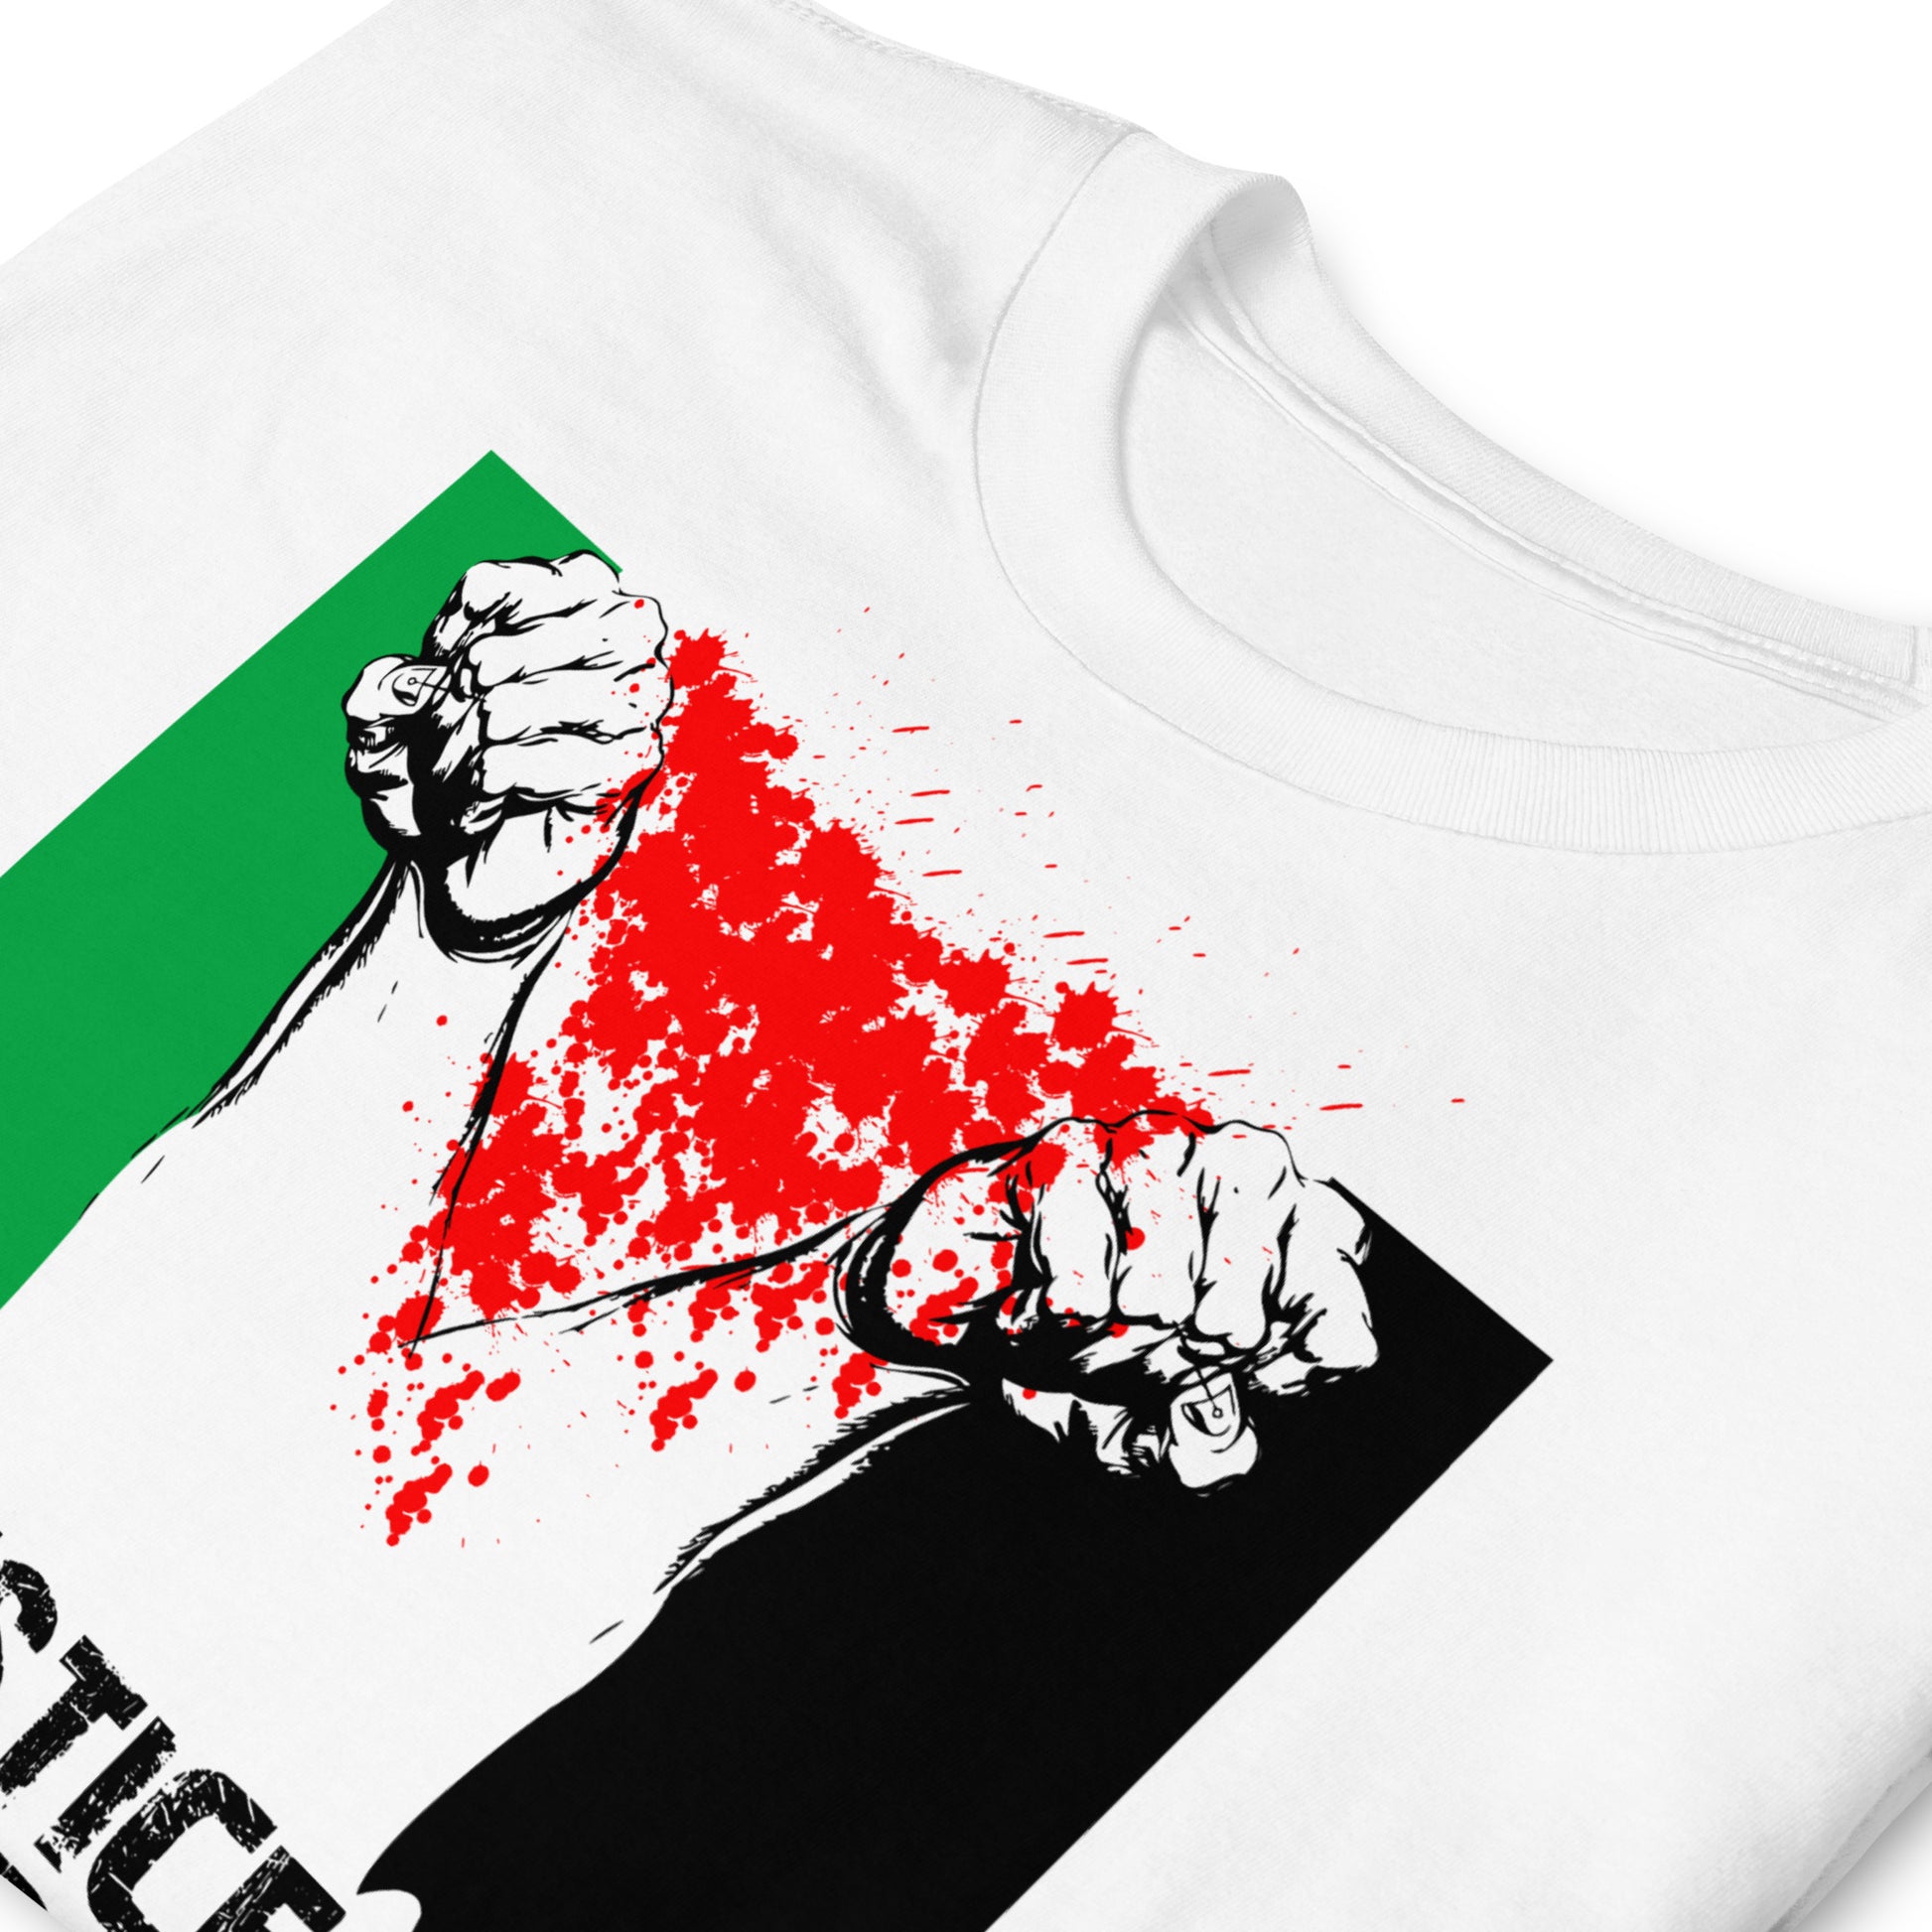 Camiseta Justicia para Palestina